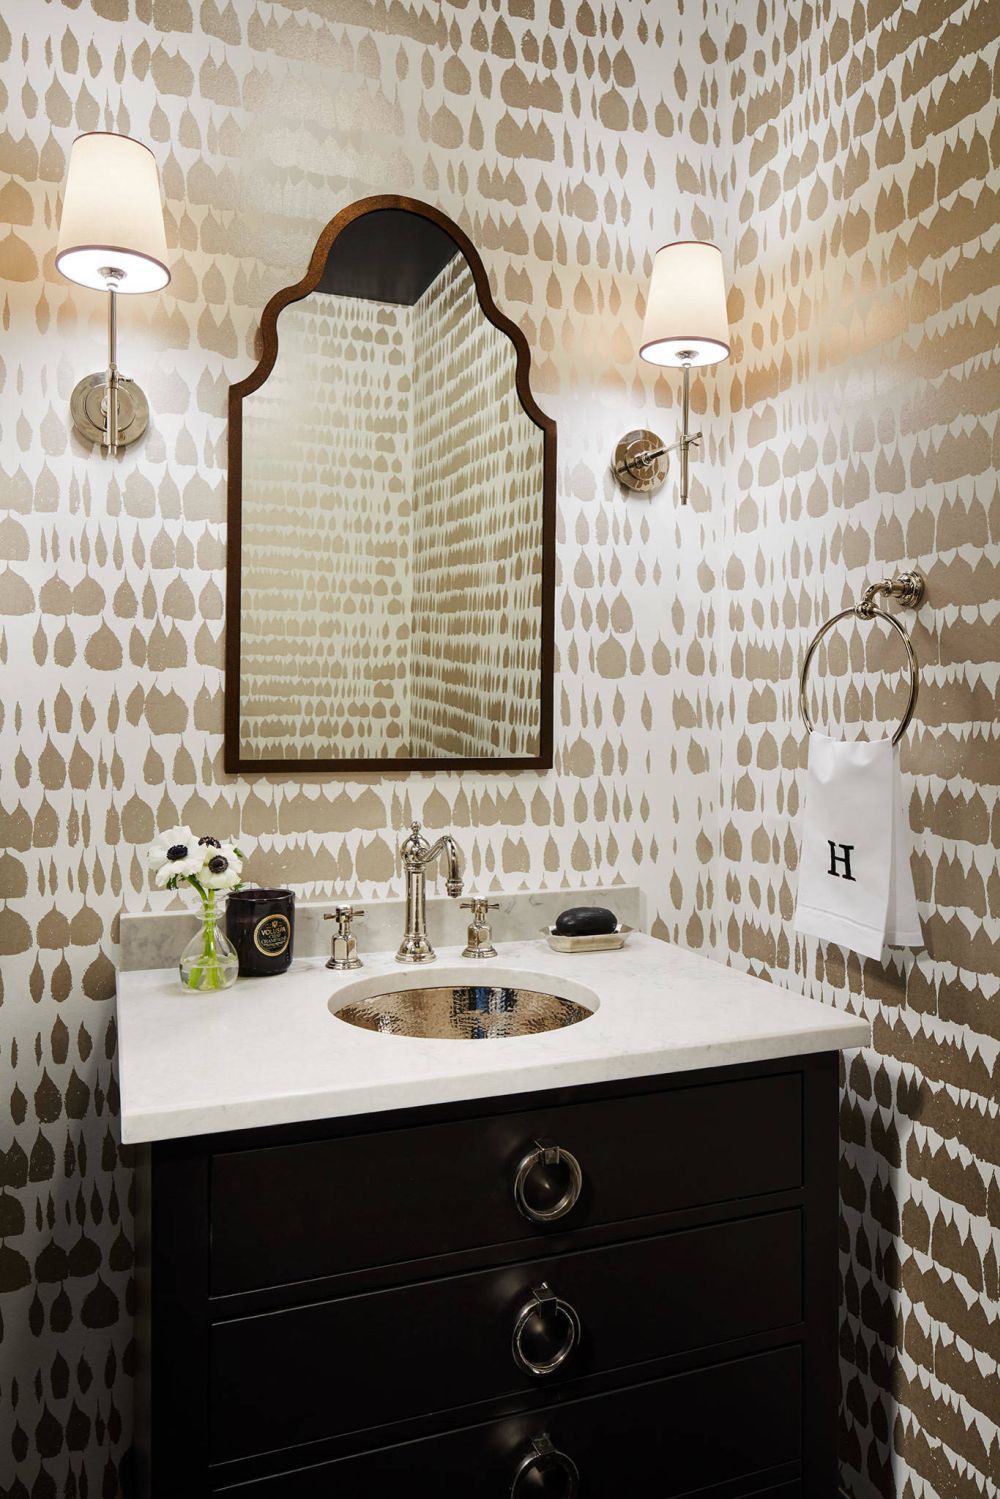 schumacher queen of spain wallpaper,tile,bathroom,room,interior design,property